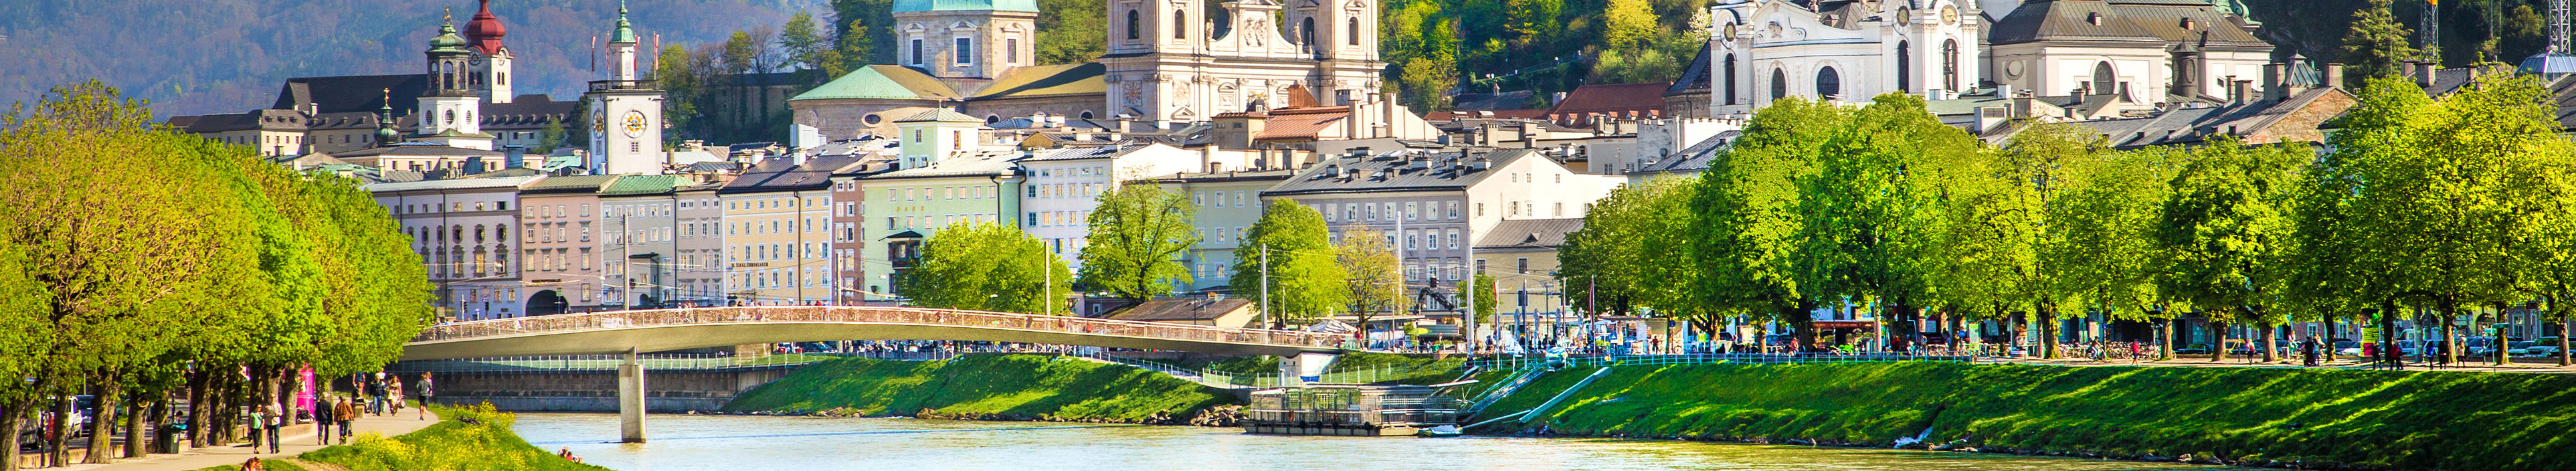 Skyline von Salzburg mit dem Fluss Salzach im Frühling, Österreich